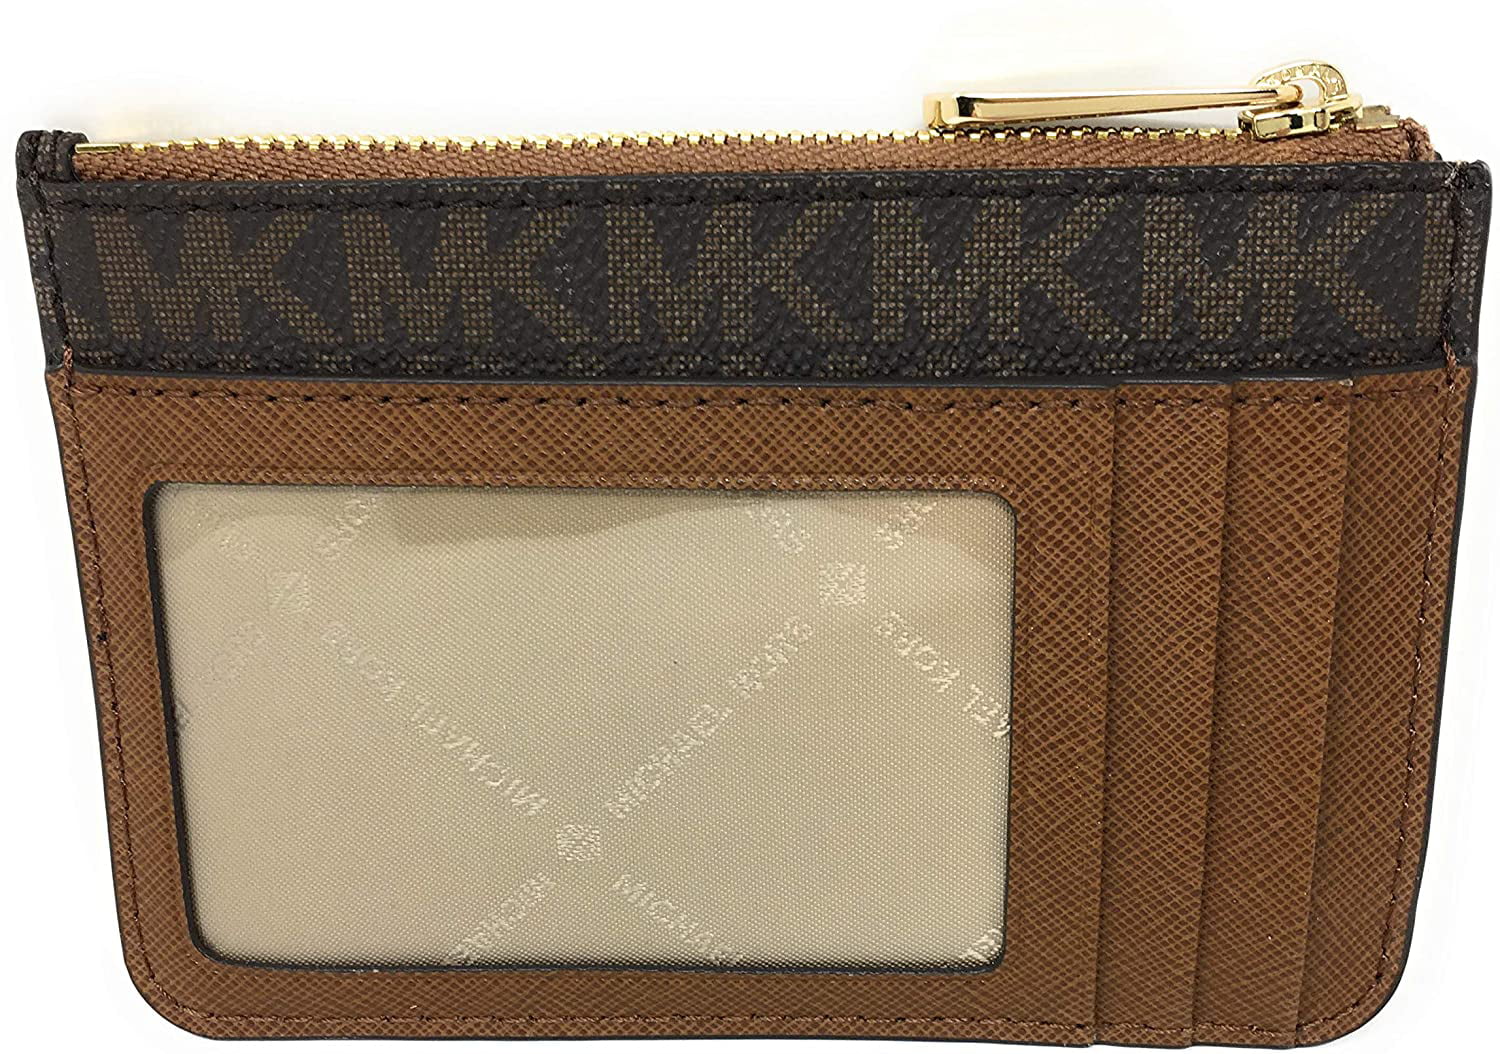 HAPPY SHOP - MK wallets Or sling bag ♨️March 2020 ♨️